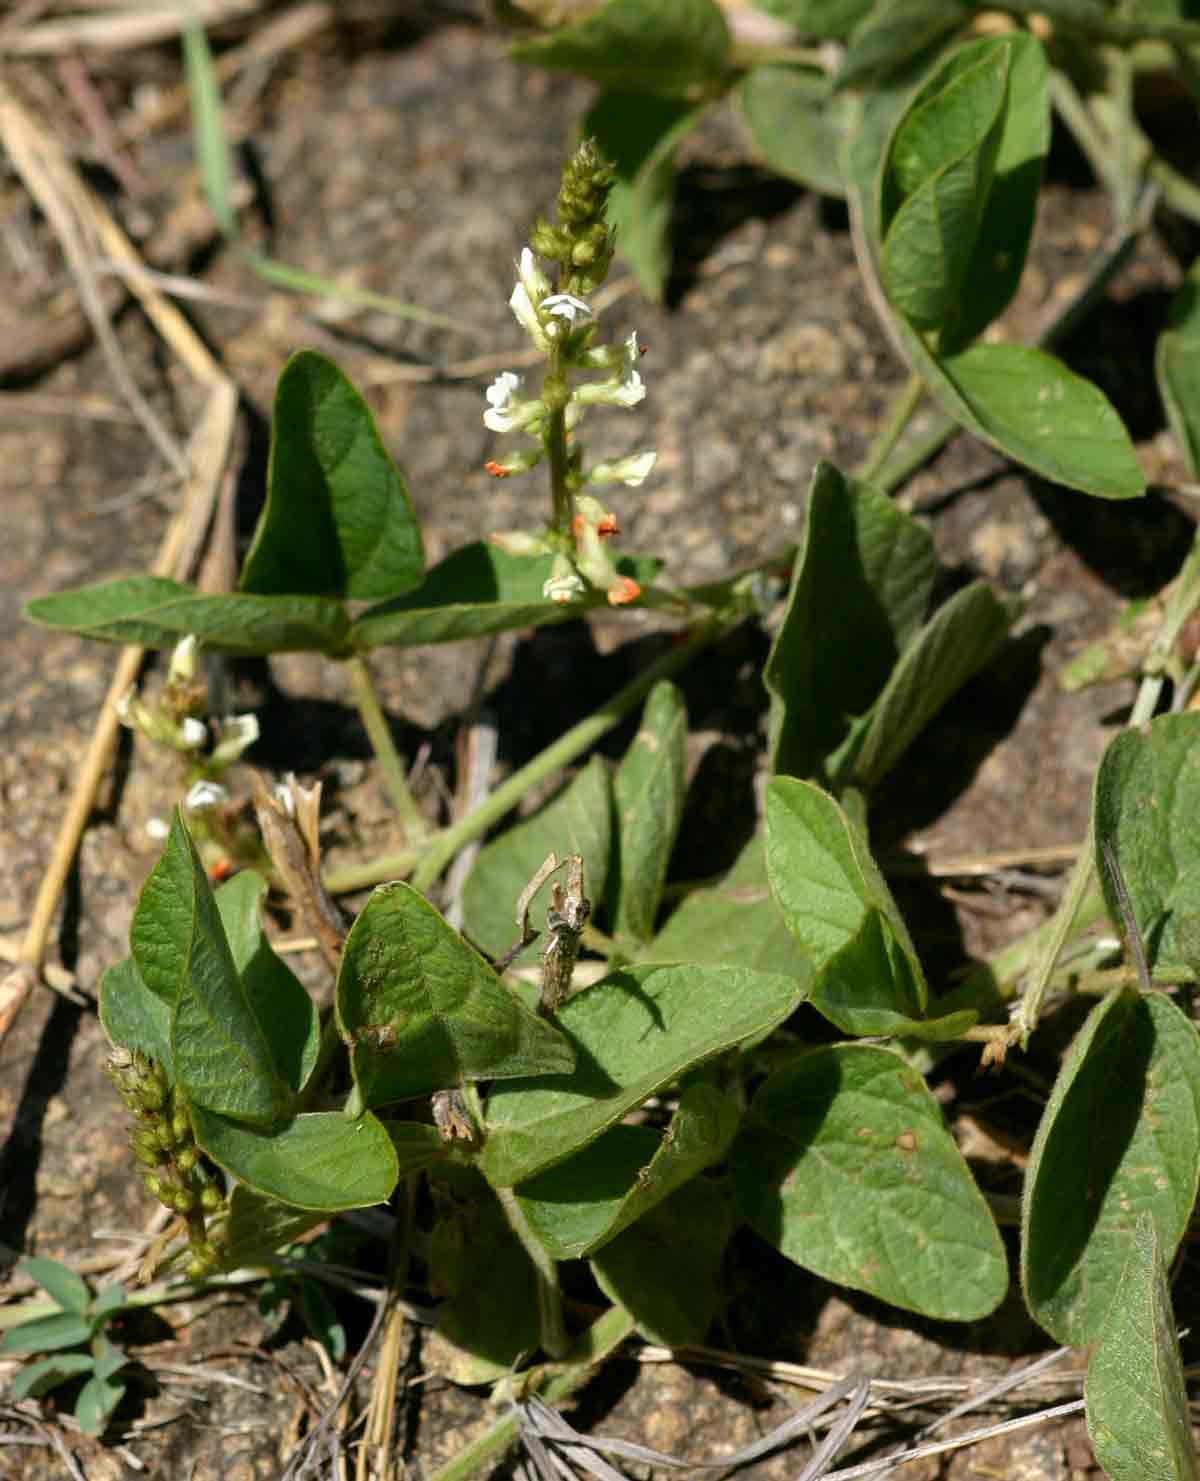 Neonotonia wightii subsp. wightii var. longicauda